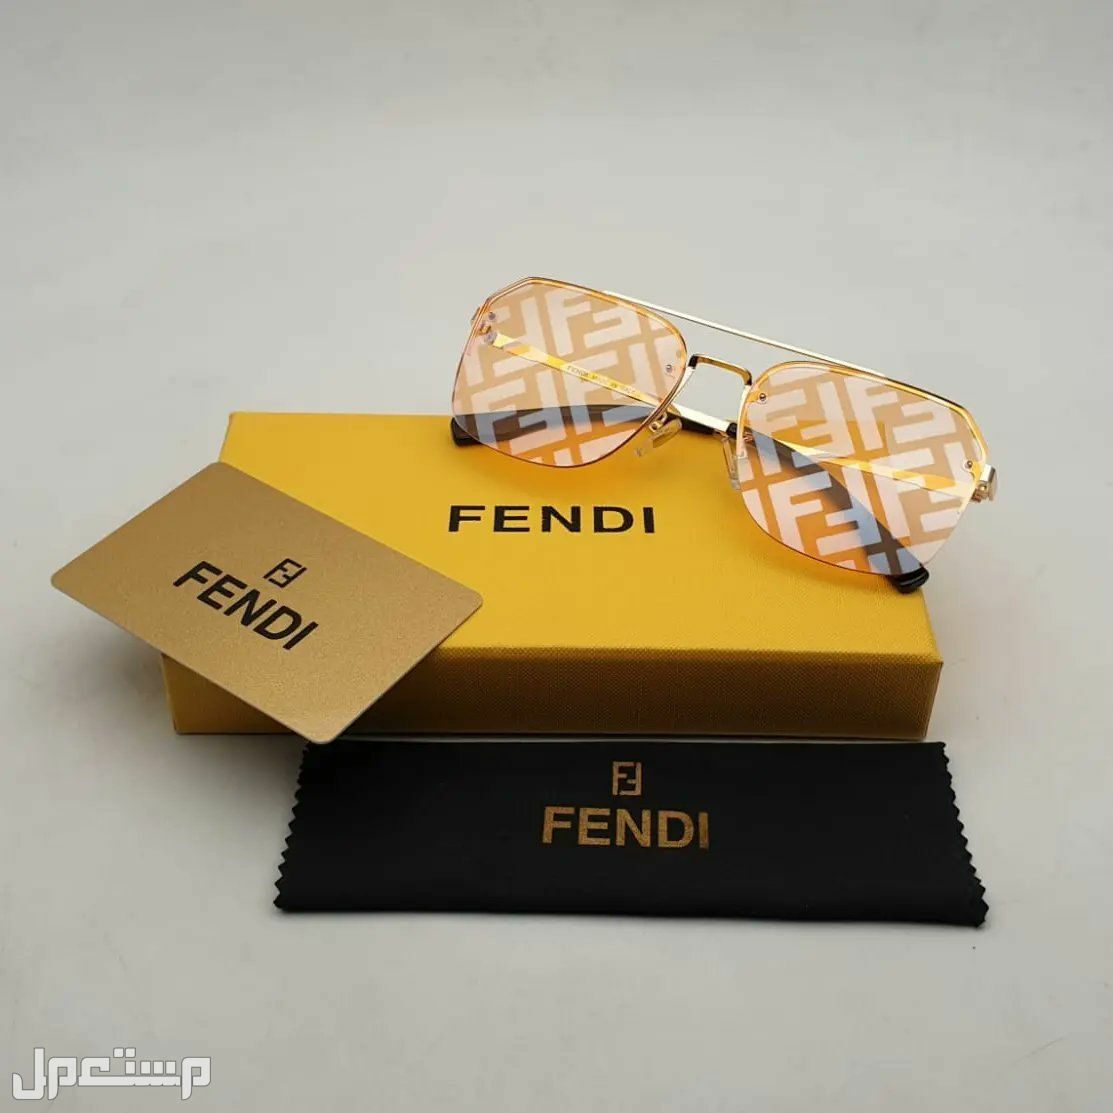 نظارات فندي Fendi النسائية تعرف على مواصفاتها وأسعارها كاملة فندي مميزة